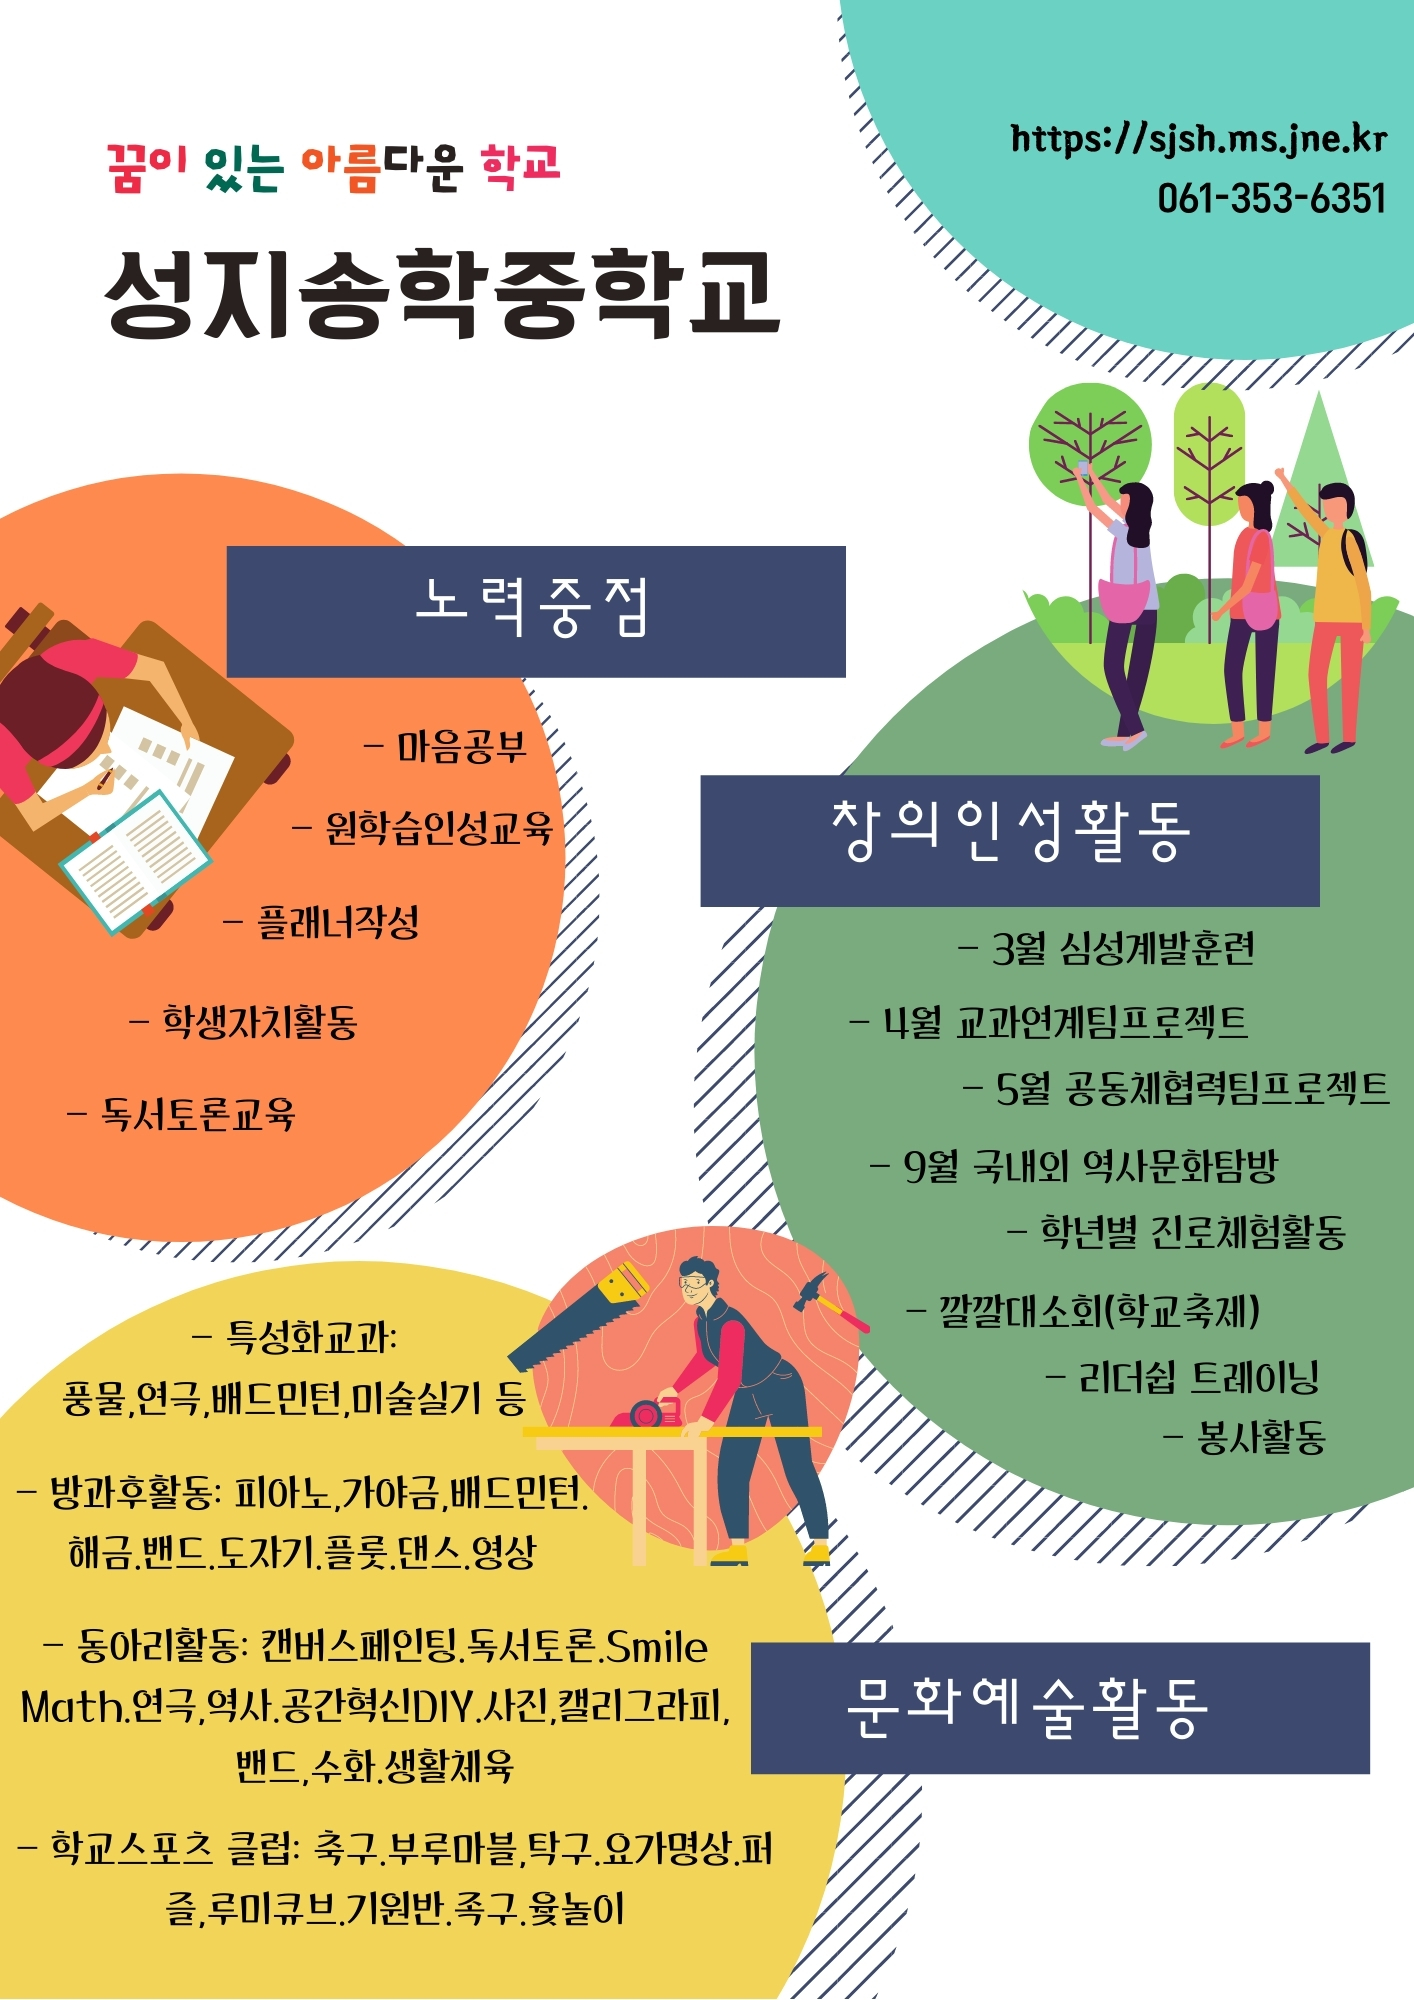 성지송학중 학교 홍보 포스터